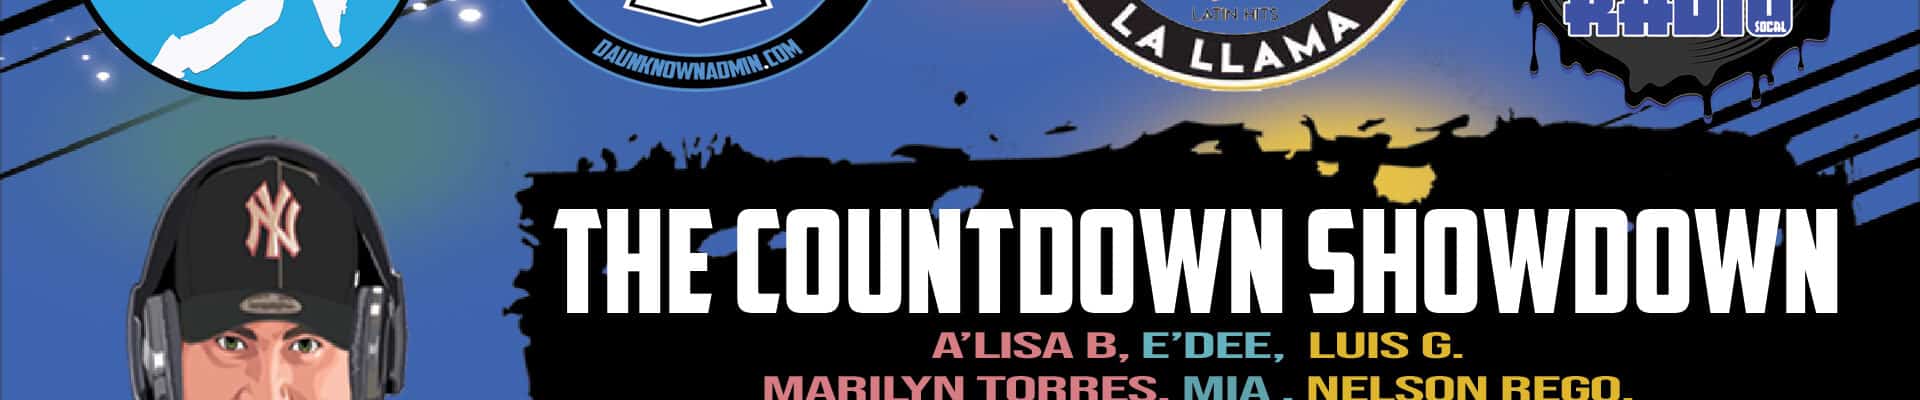 The Countdown Showdown - April 2020